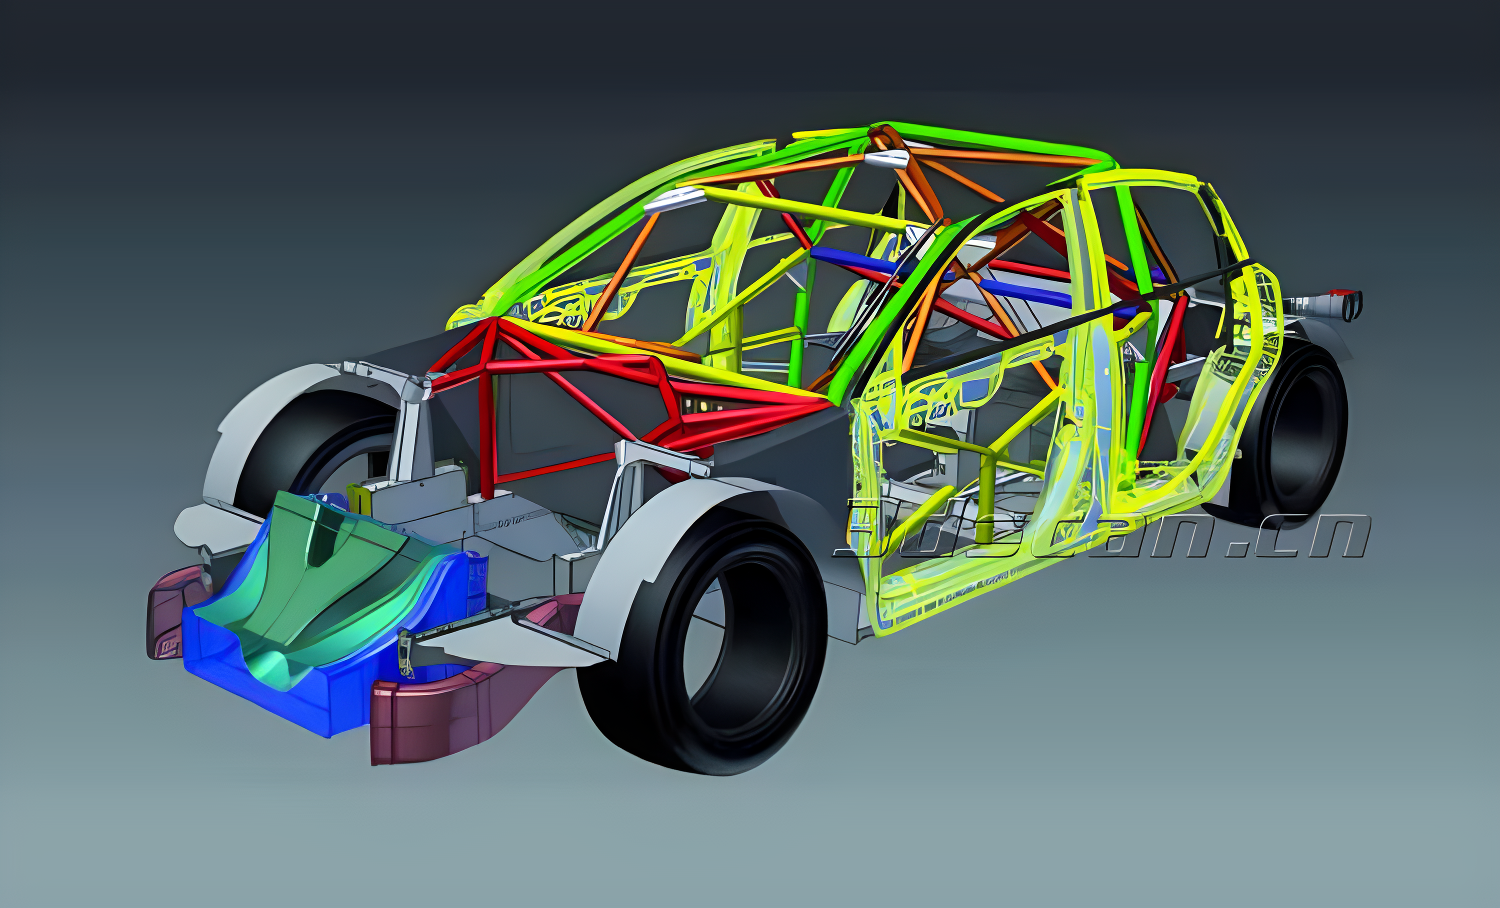 巴哈赛车悬架系统设计(含CAD零件装配图,CATIA三维图,ANSYS,Adams)||机械机电